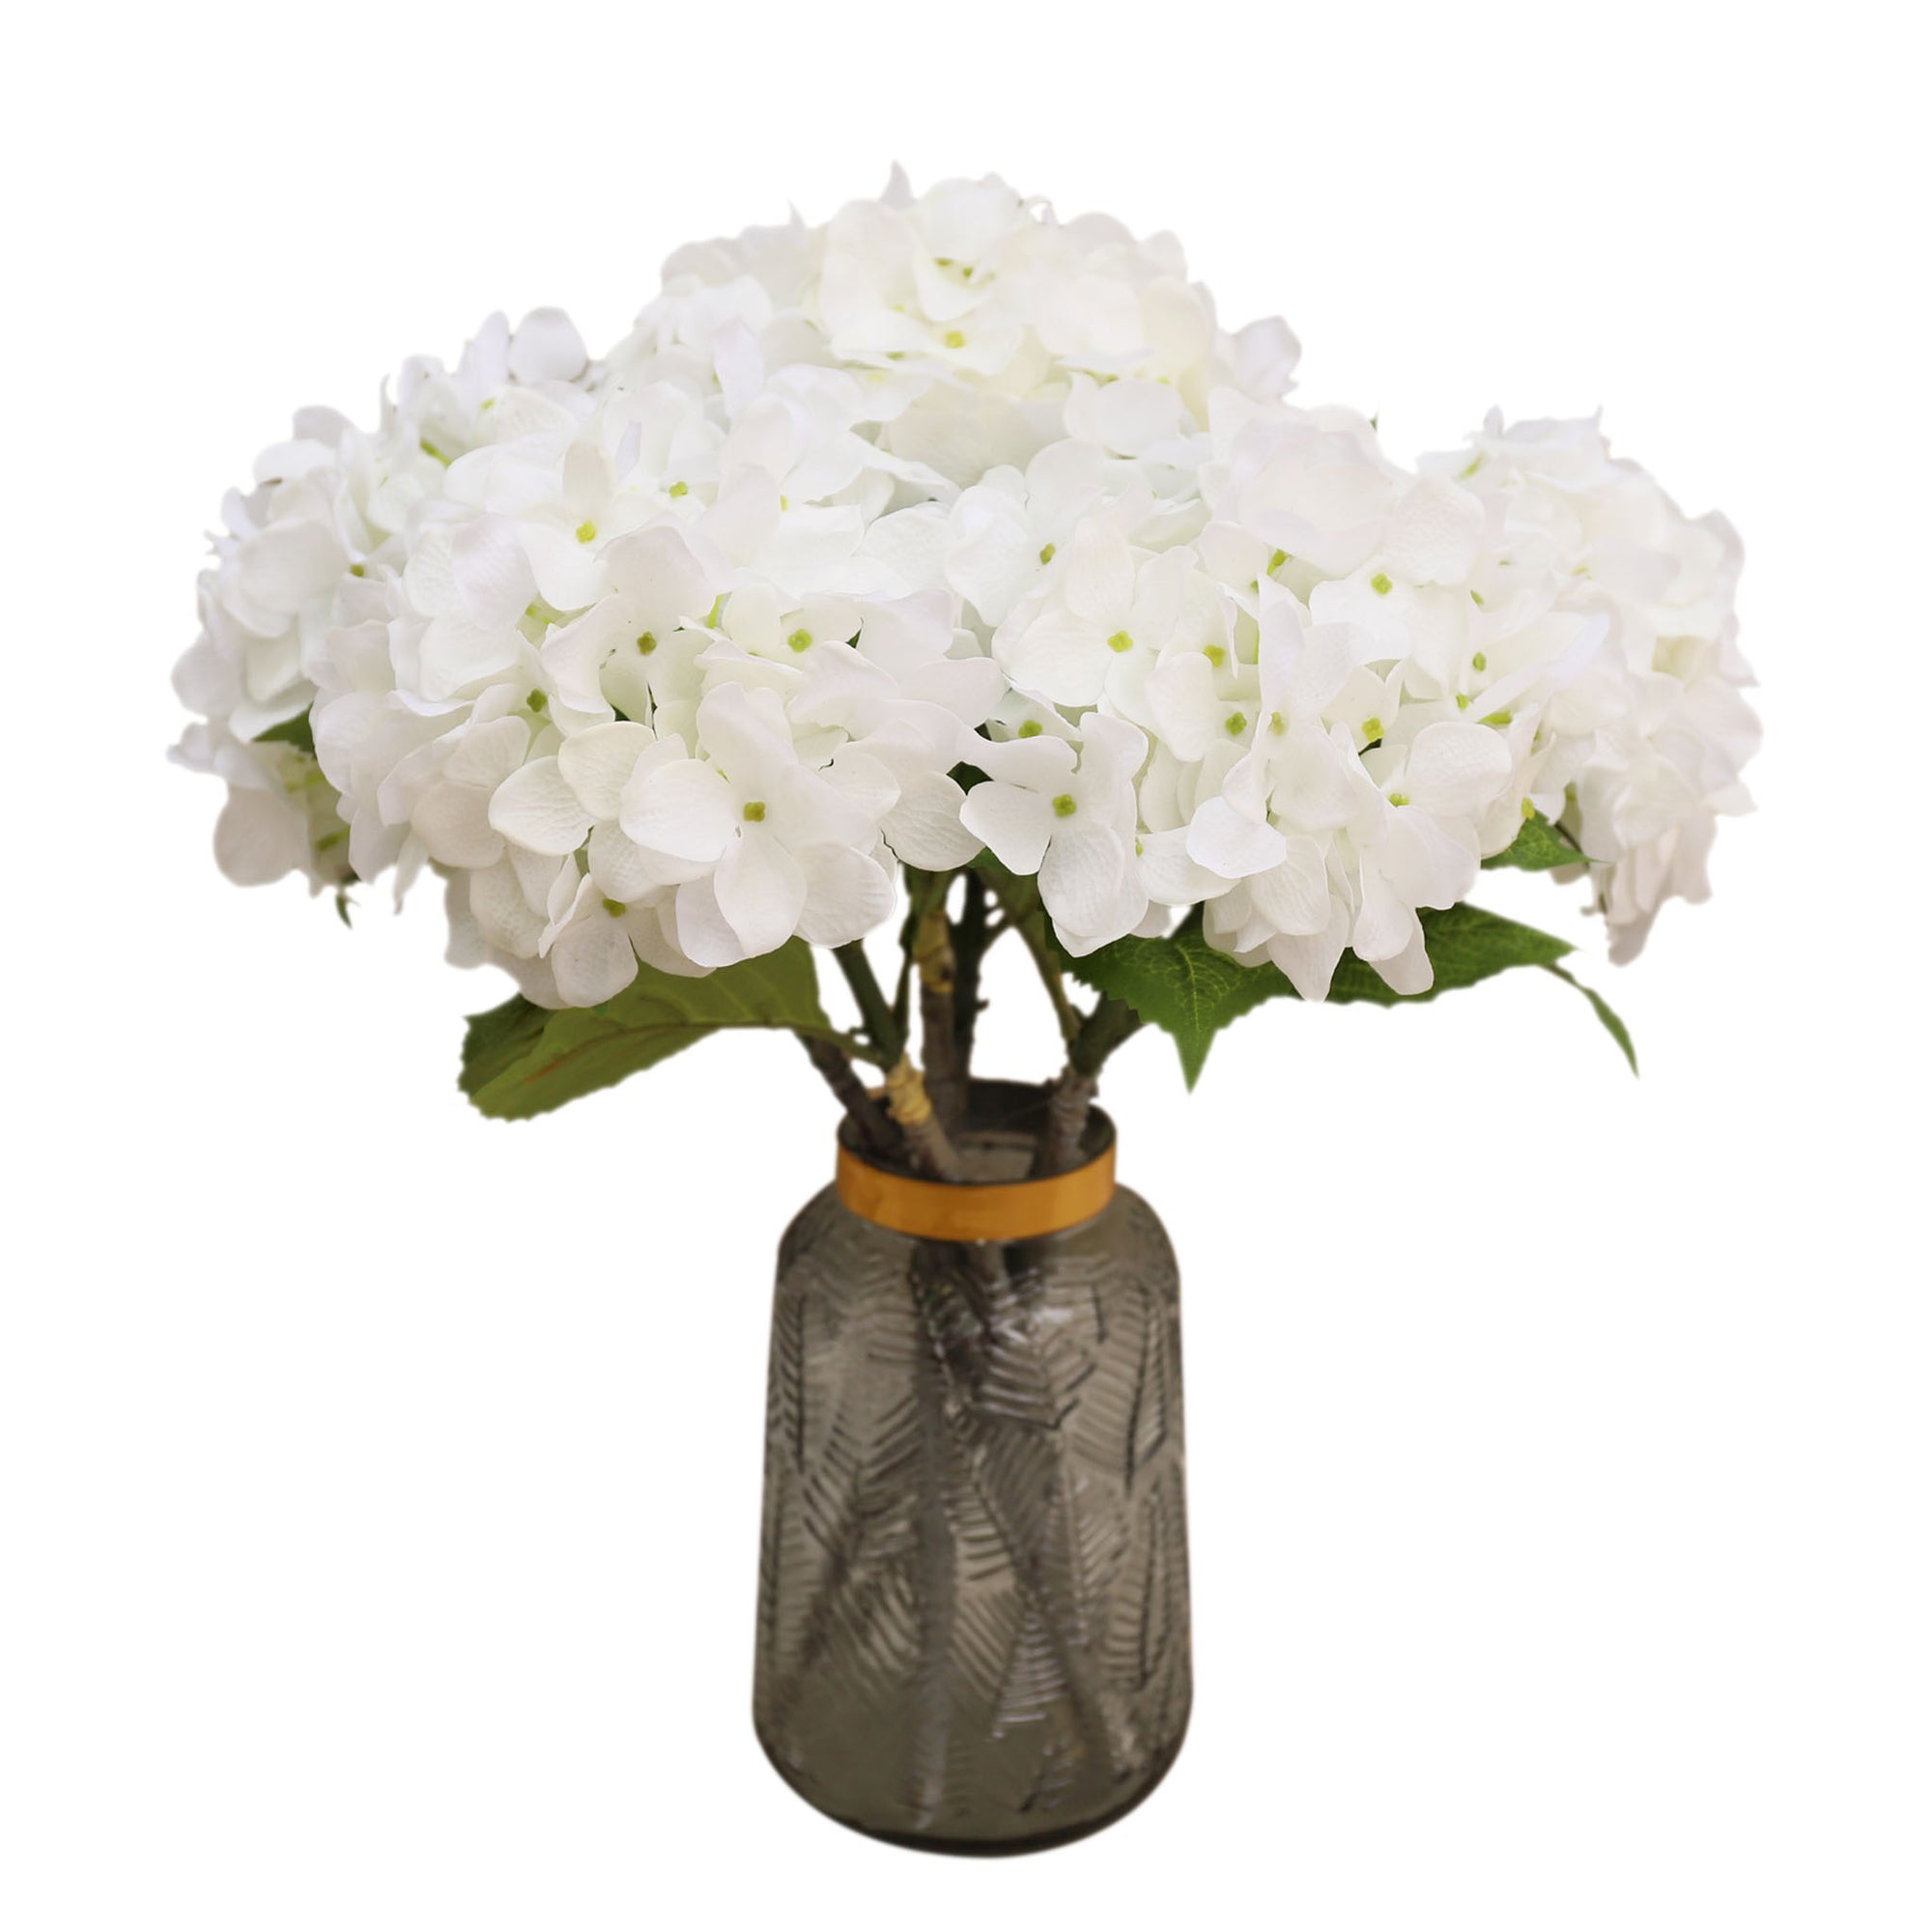 Hydrangea Blooms White Flower for Arrangement